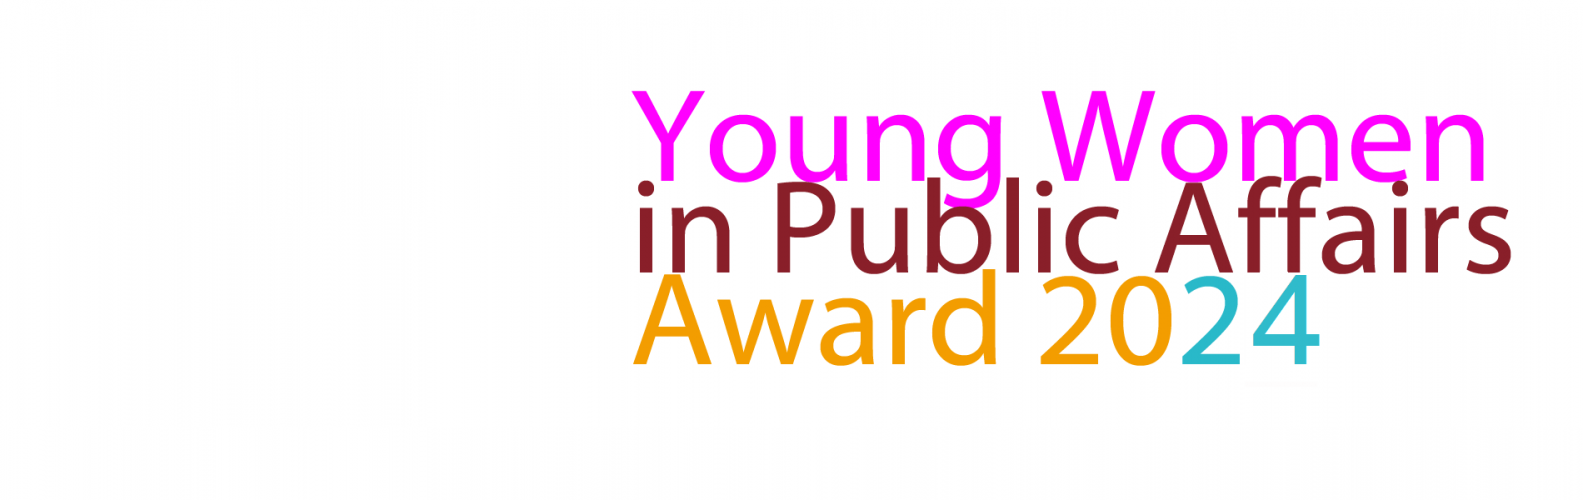 Young Women in Public Affairs Award 2024